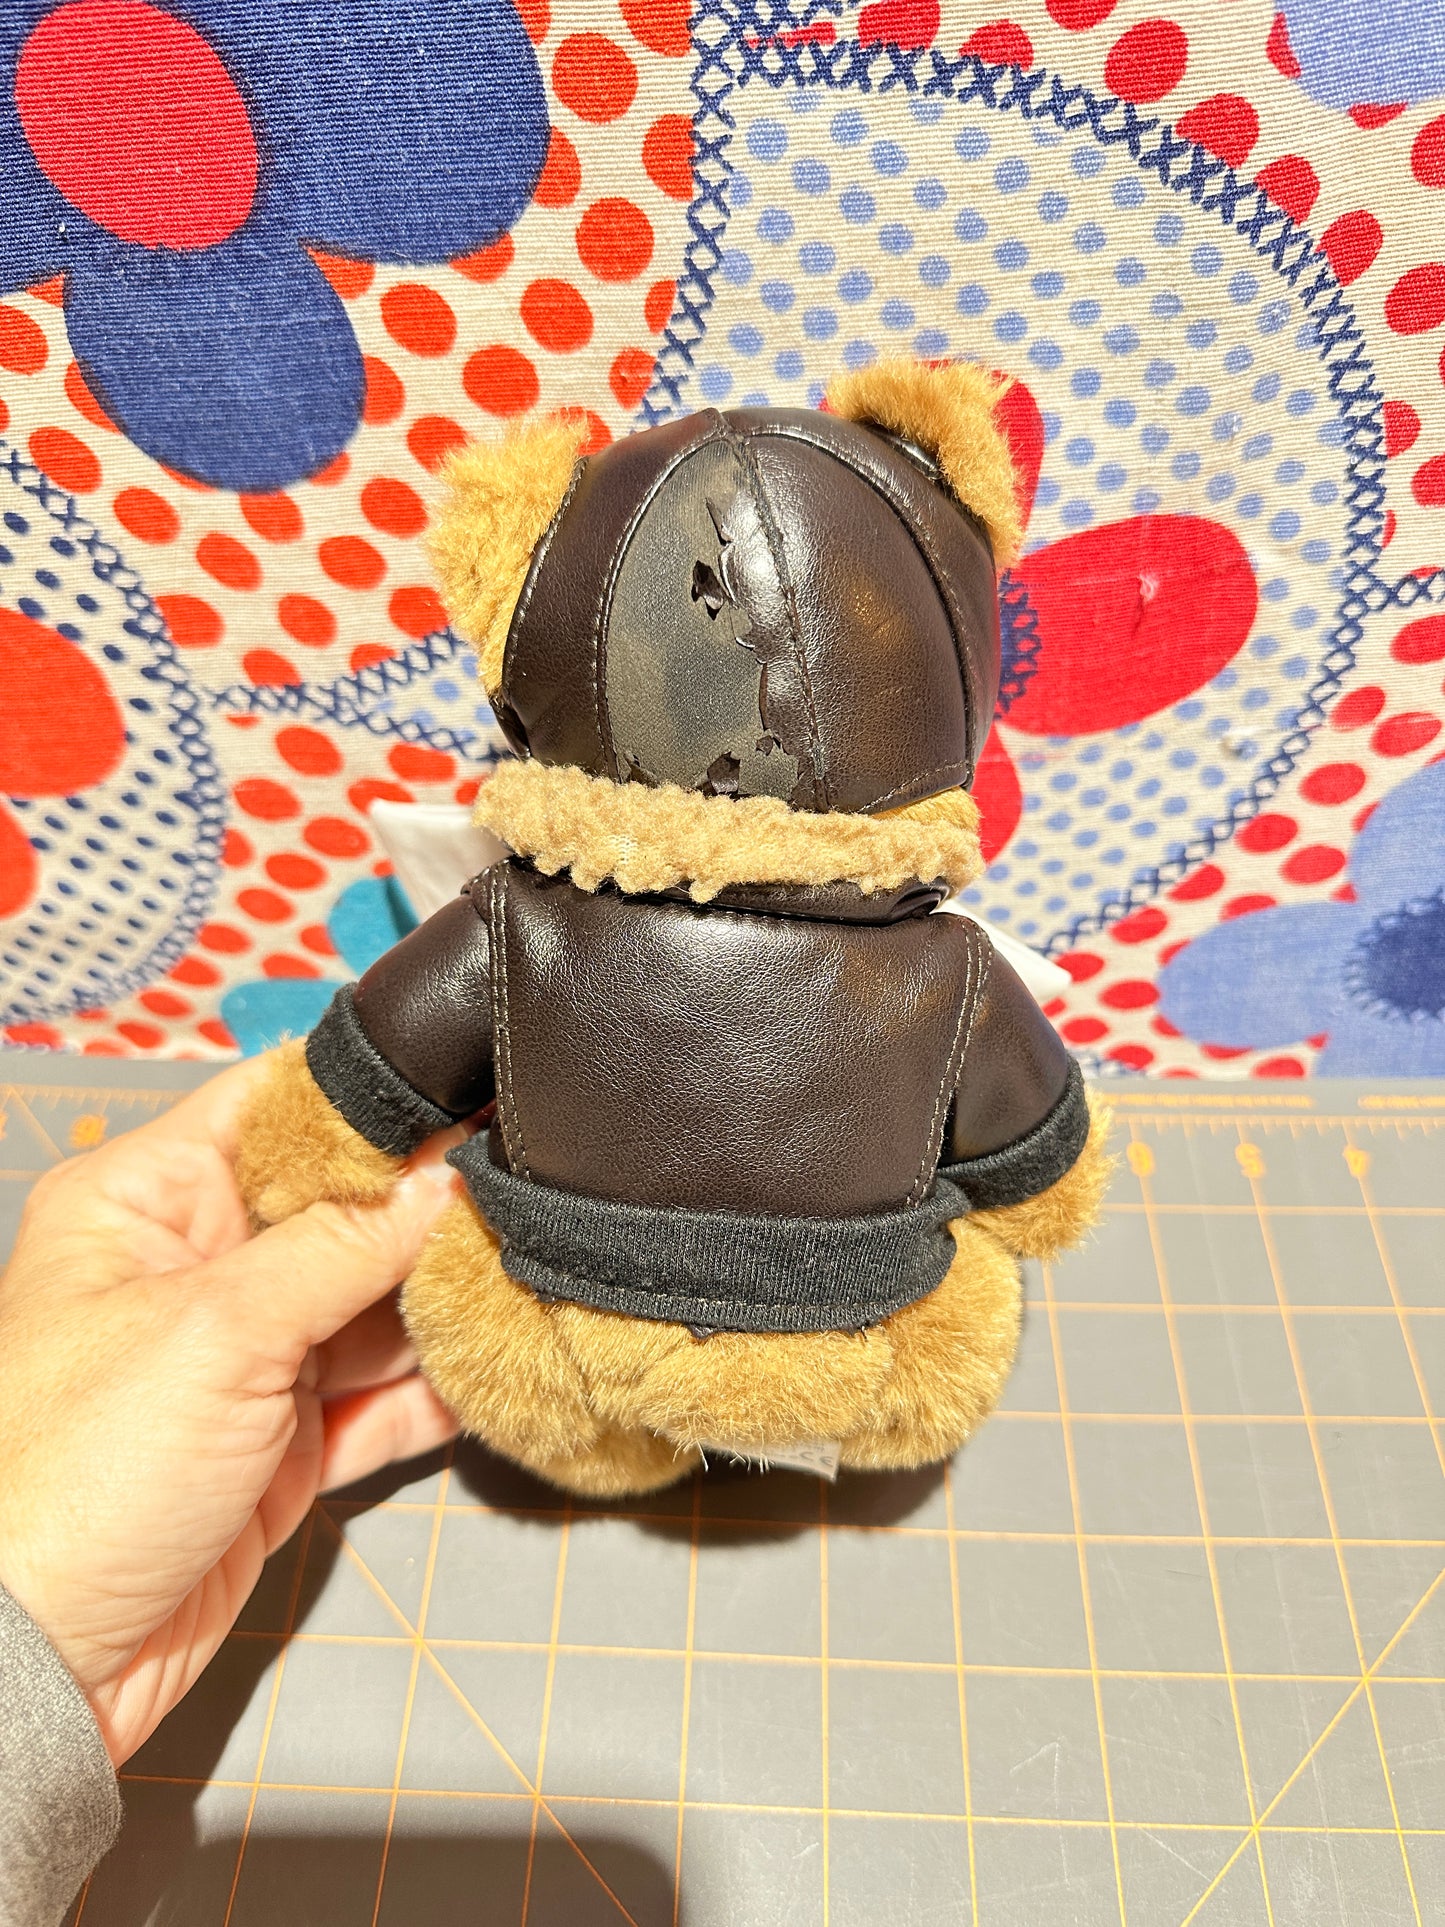 Aviator Teddy Bear by Artistic Toy Mfg, 8"